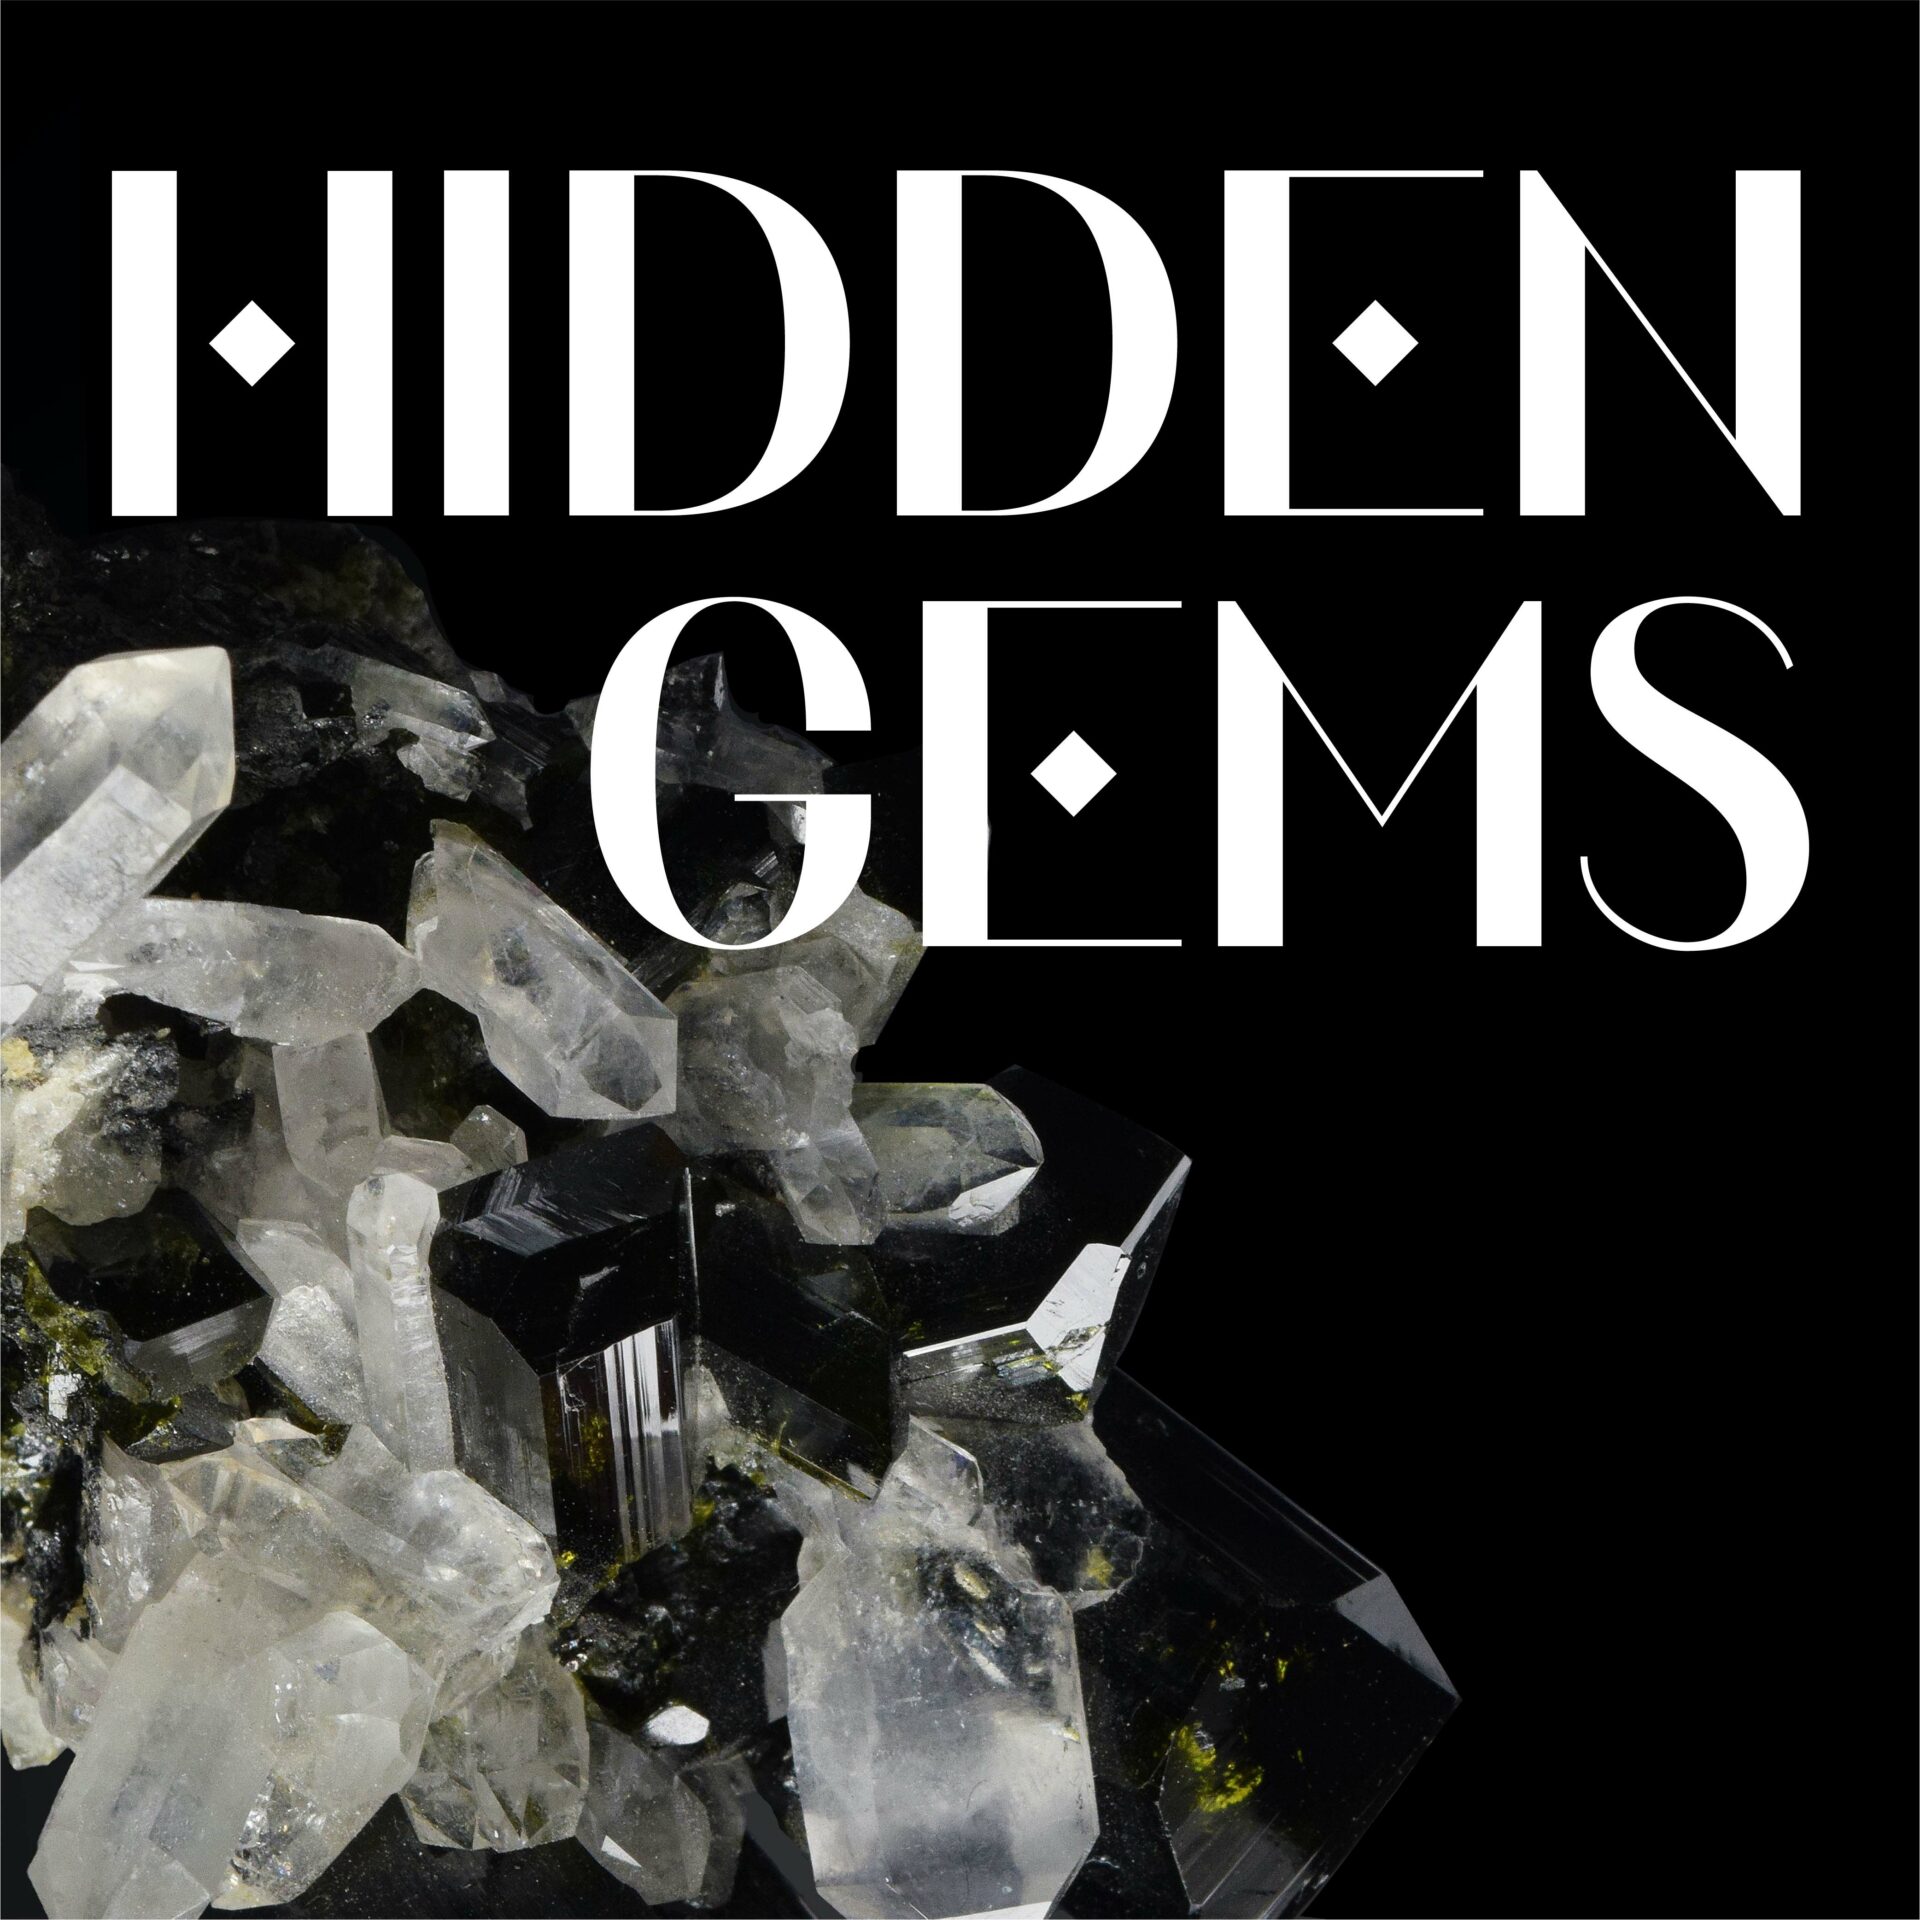 type specimen: hidden gems